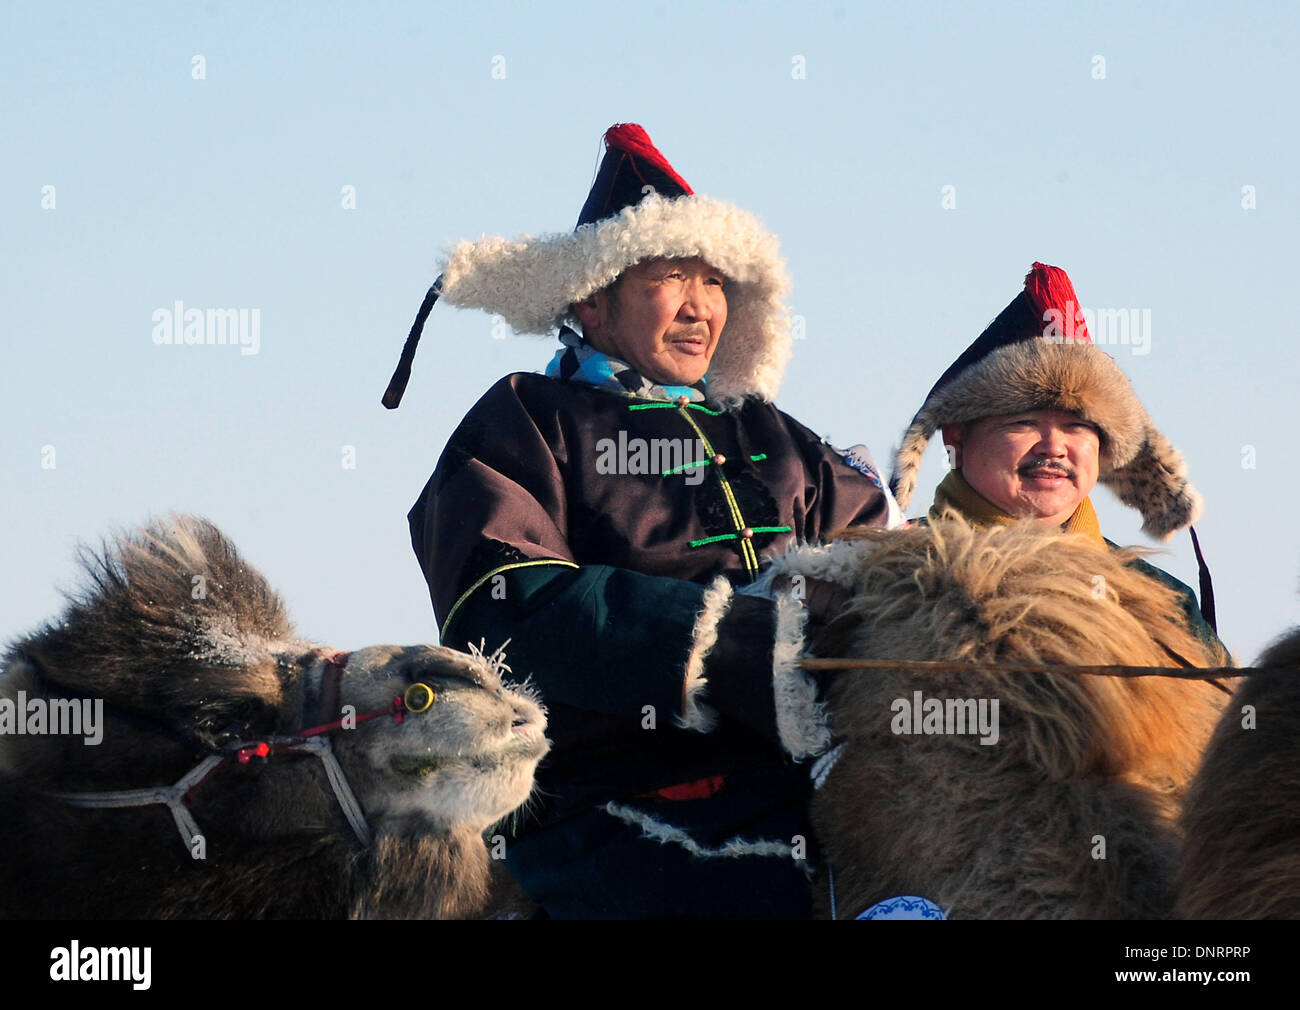 Bannière Ujimqin ouest, la Région autonome de Mongolie intérieure. 4 janvier, 2014. Deux bergers en tenue traditionnelle de l'ethnie mongole attendre à participer aux courses de chameaux à un carnaval de glace et de neige dans l'ouest de bannière Ujimqin, Chine du nord, région autonome de Mongolie intérieure, le 5 janvier 2014. Le carnaval d'hiver dure du 4 janvier au 5 janvier ici. Credit : Wang Song/Xinhua/Alamy Live News Banque D'Images